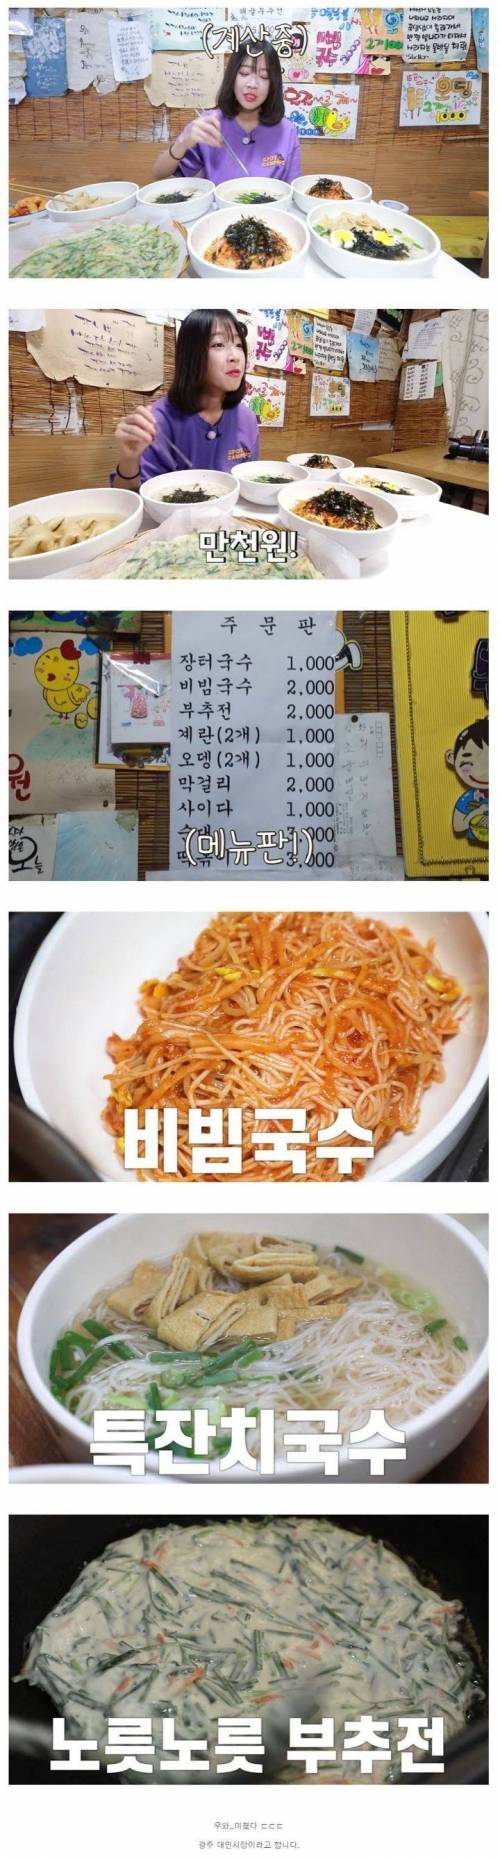 식당에서 11,000원 어치밖에 못먹은 쯔양.jpg